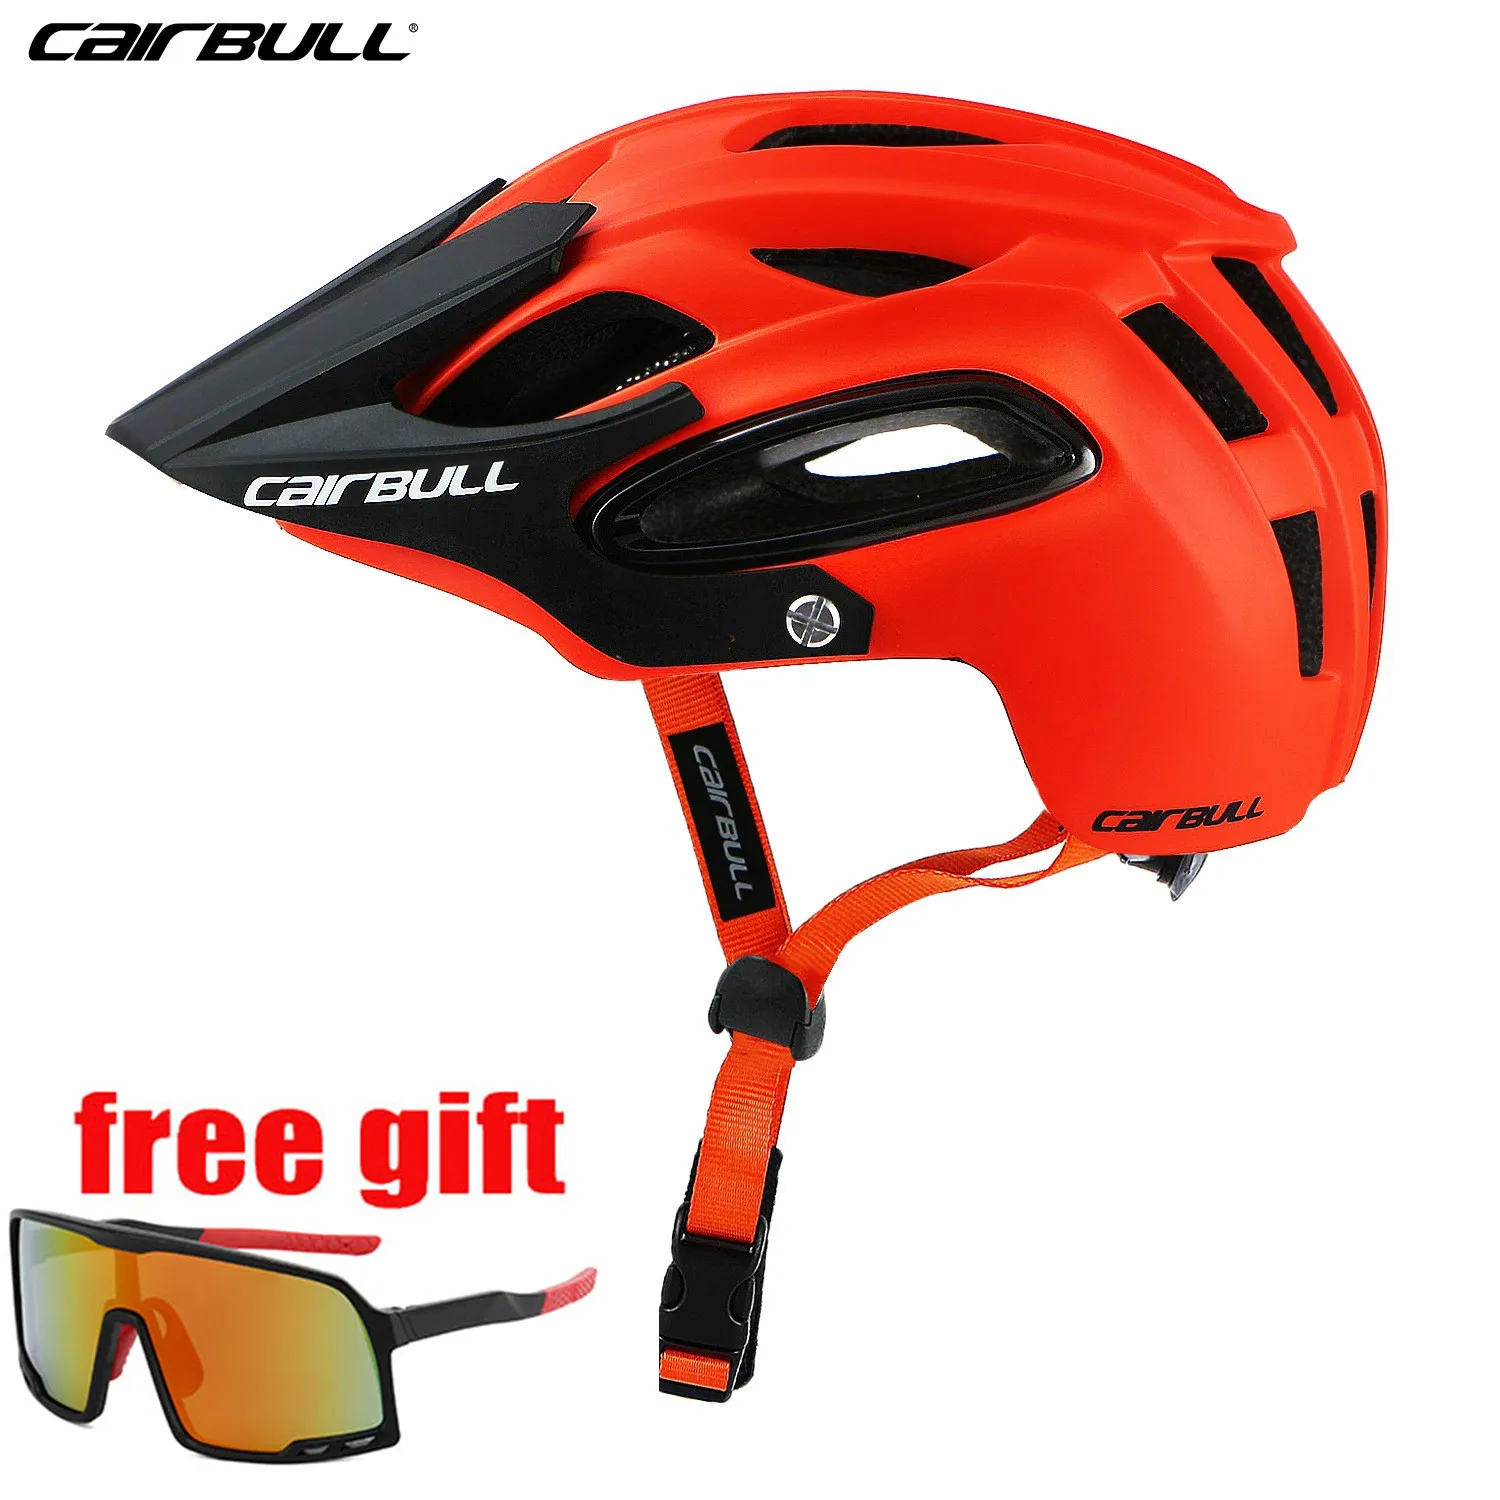 CAIRBULL-Casco de ciclismo todoterreno para hombre y mujer, protección de seguridad para...